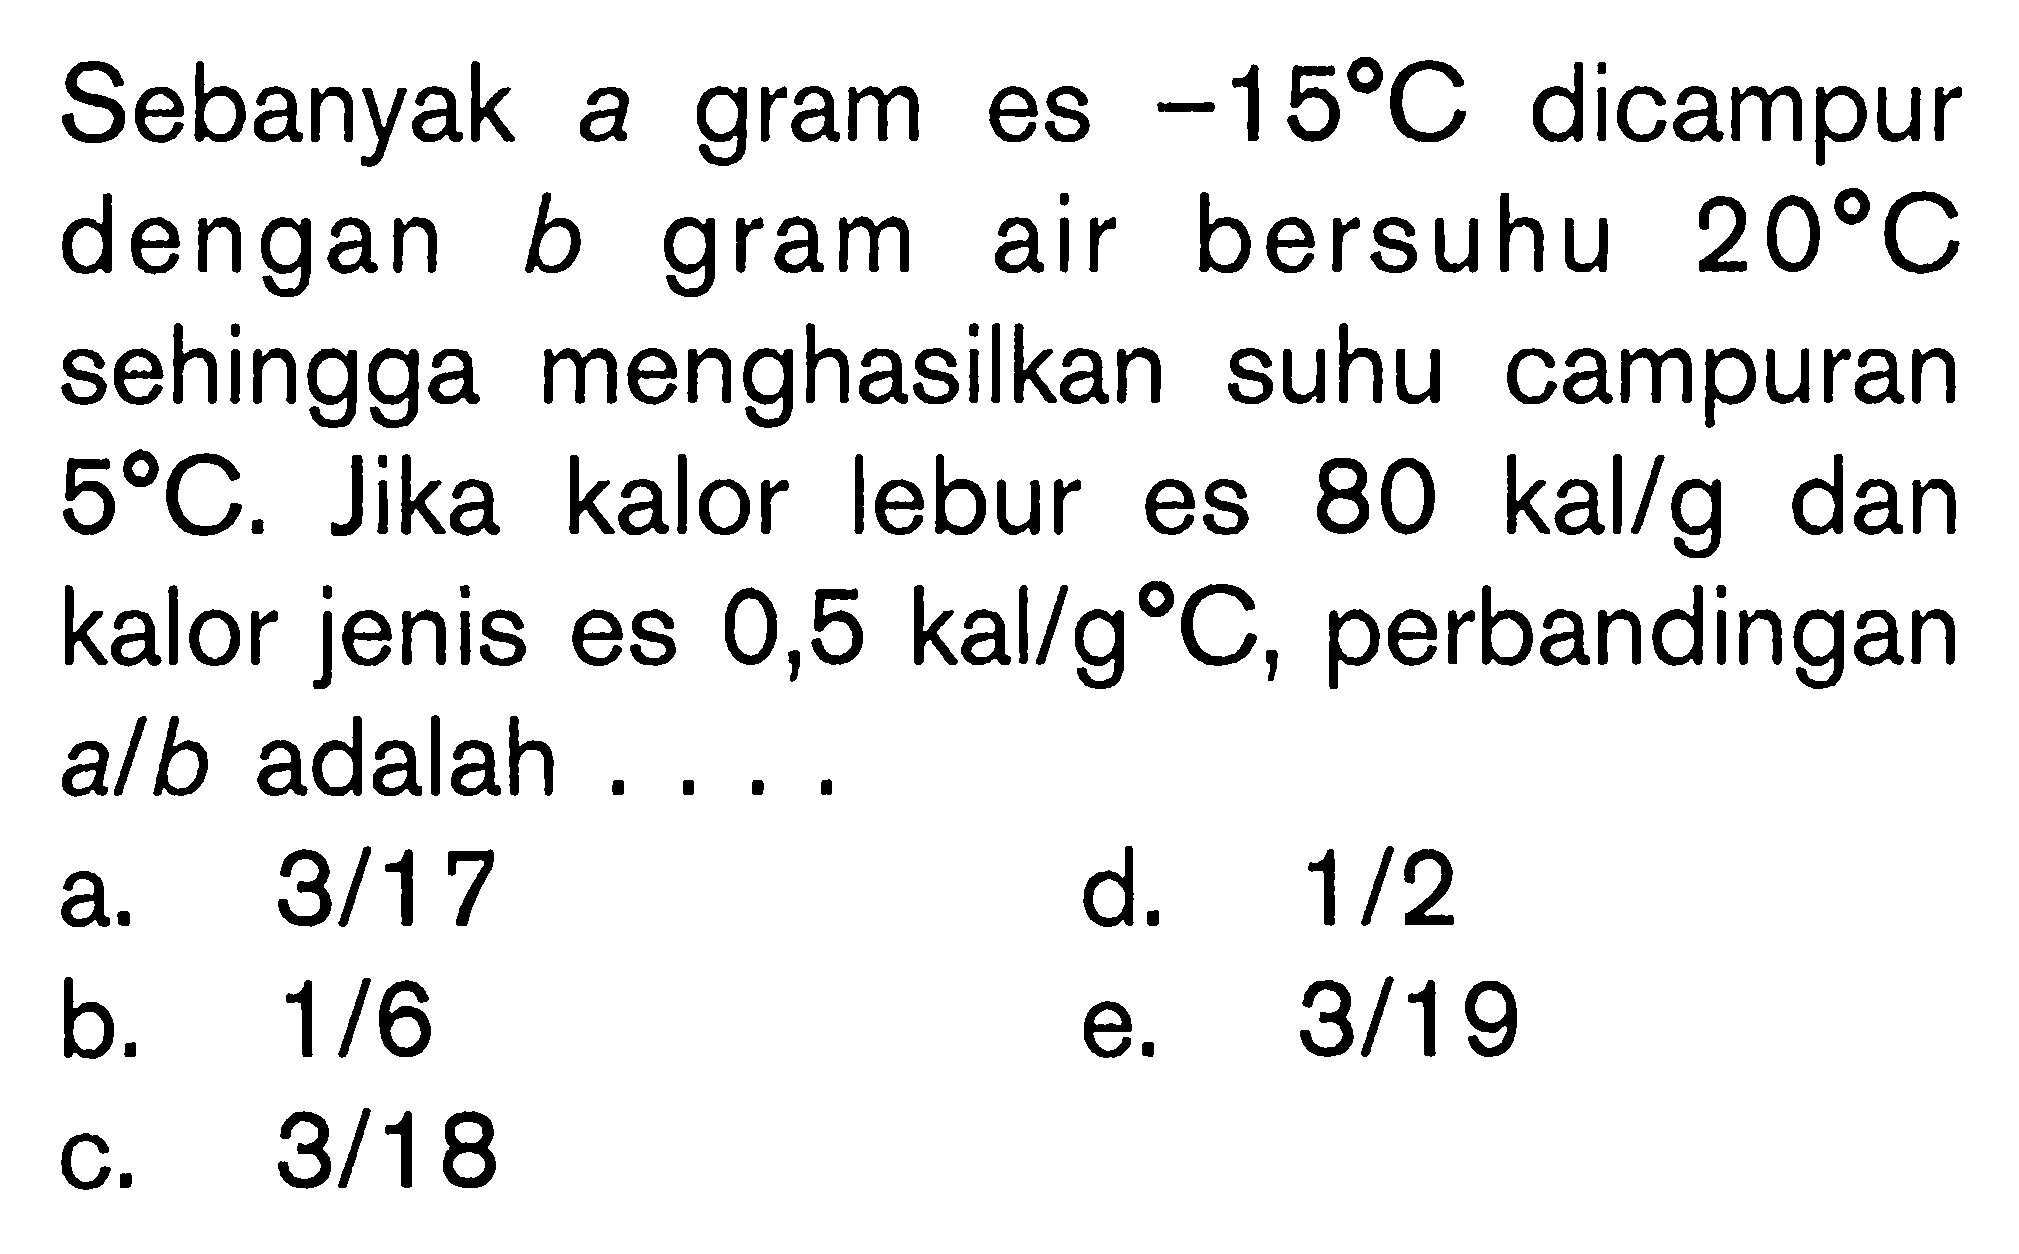 Sebanyak A gram ES -15 C Dicampur dengan B gram air bersuhu 20 C sehingga menghasilkan suhu campuran 5 C. Jika kalor lebur eS 80 kal/g dan kalor jenis es 0,5 kal/g C, perbandingan a/b adalah